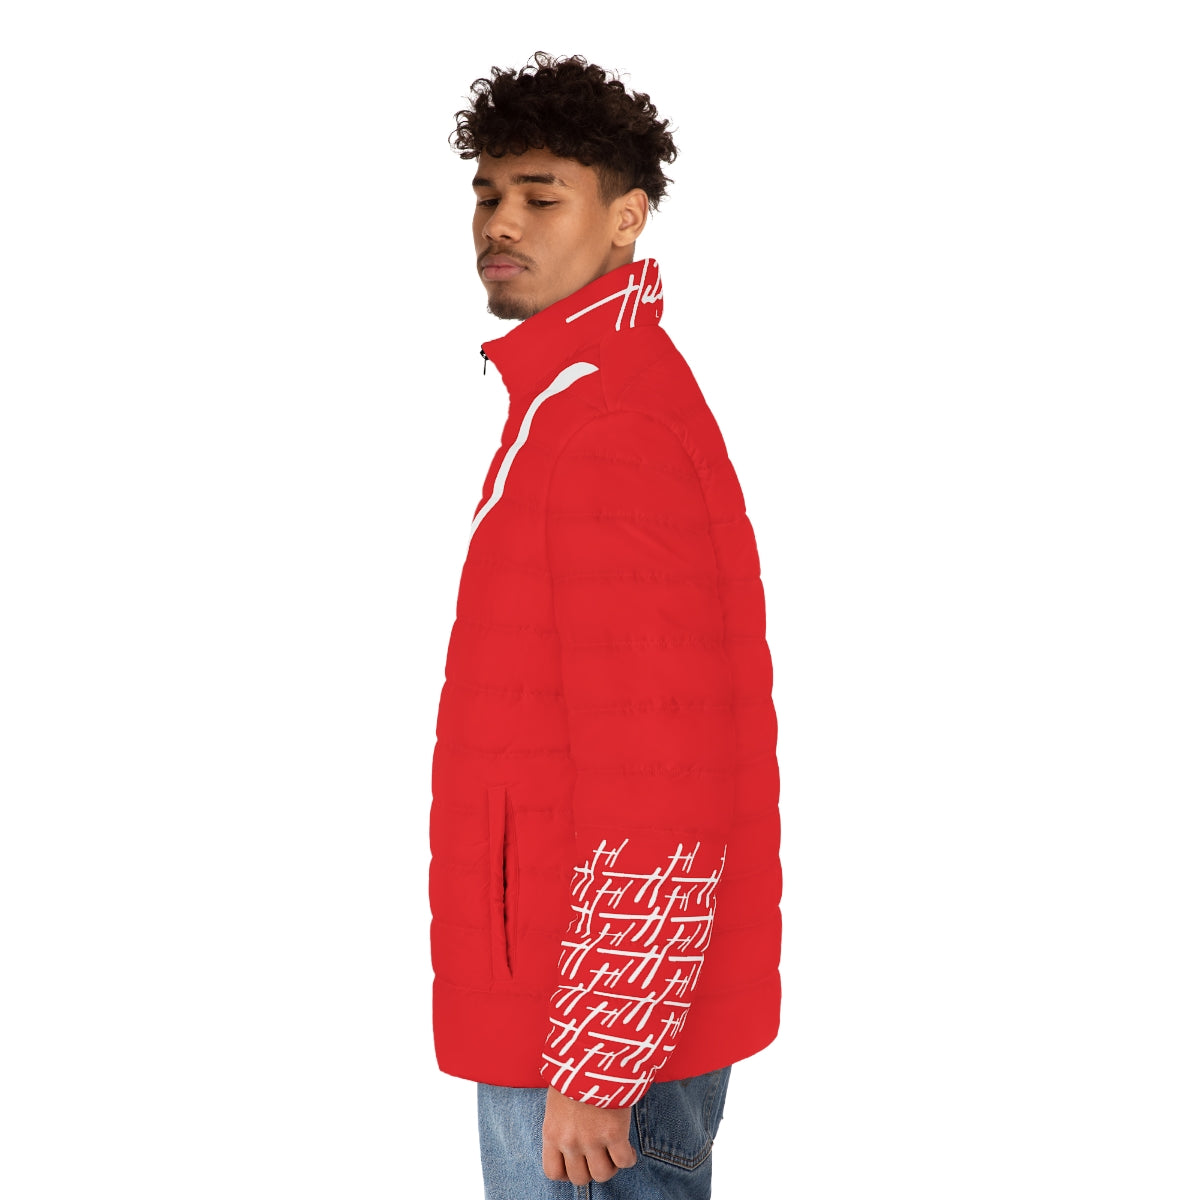 H Iconic Lifestyle Unisex Puffer Jacket (Red)